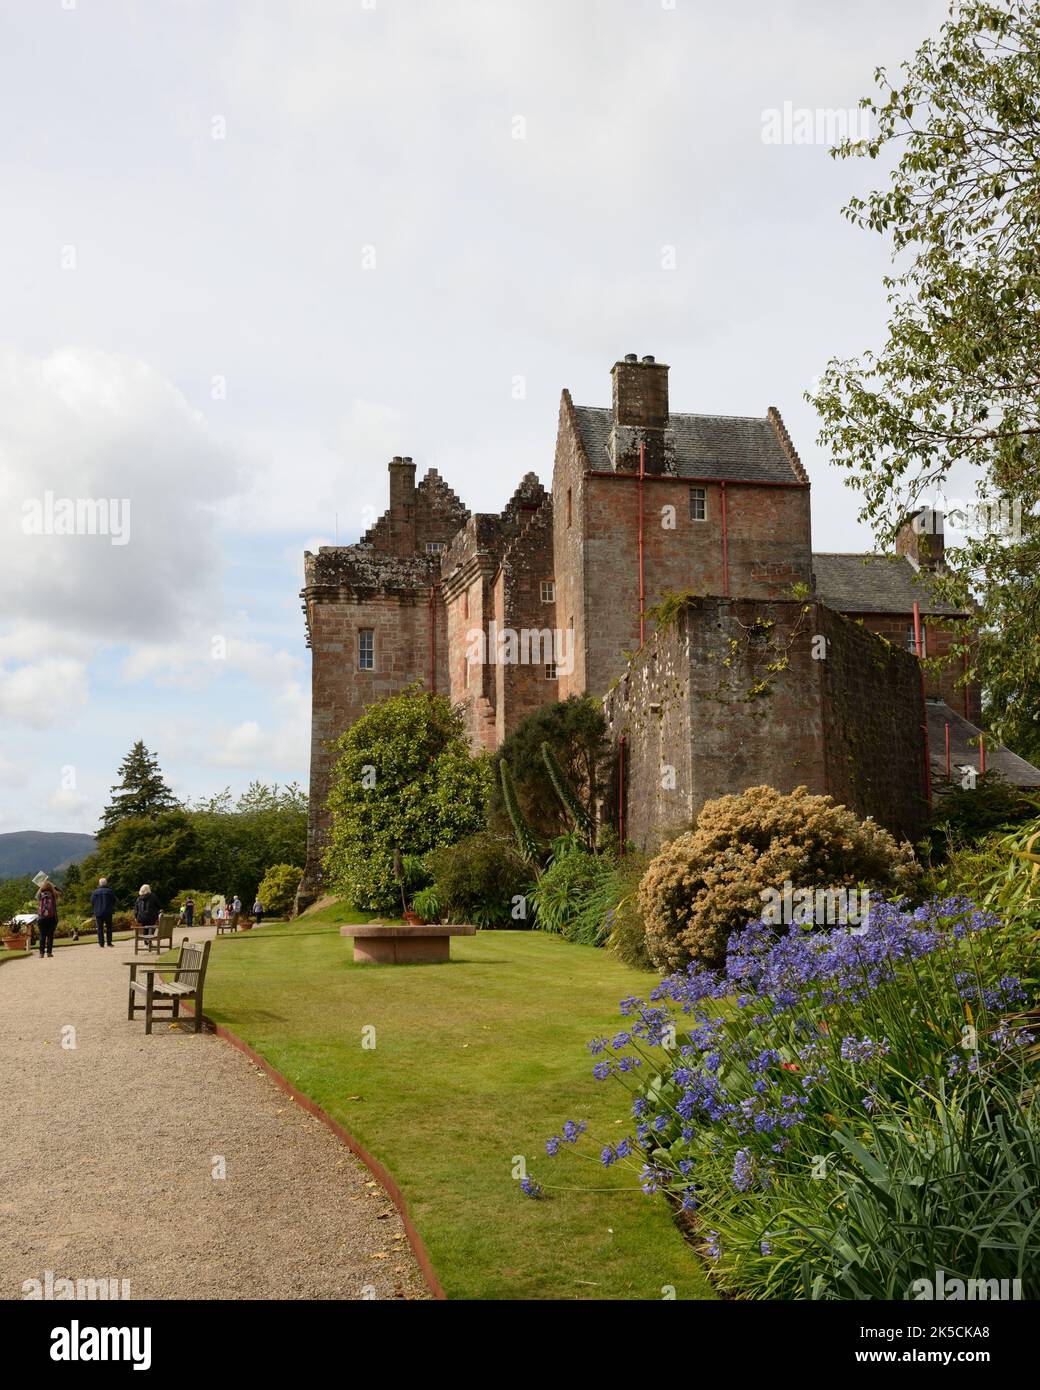 Château de Brodick, château baronial du XIXe siècle, jardins et parc de campagne sur l'île d'Arran, Écosse, Royaume-Uni, Europe. Banque D'Images